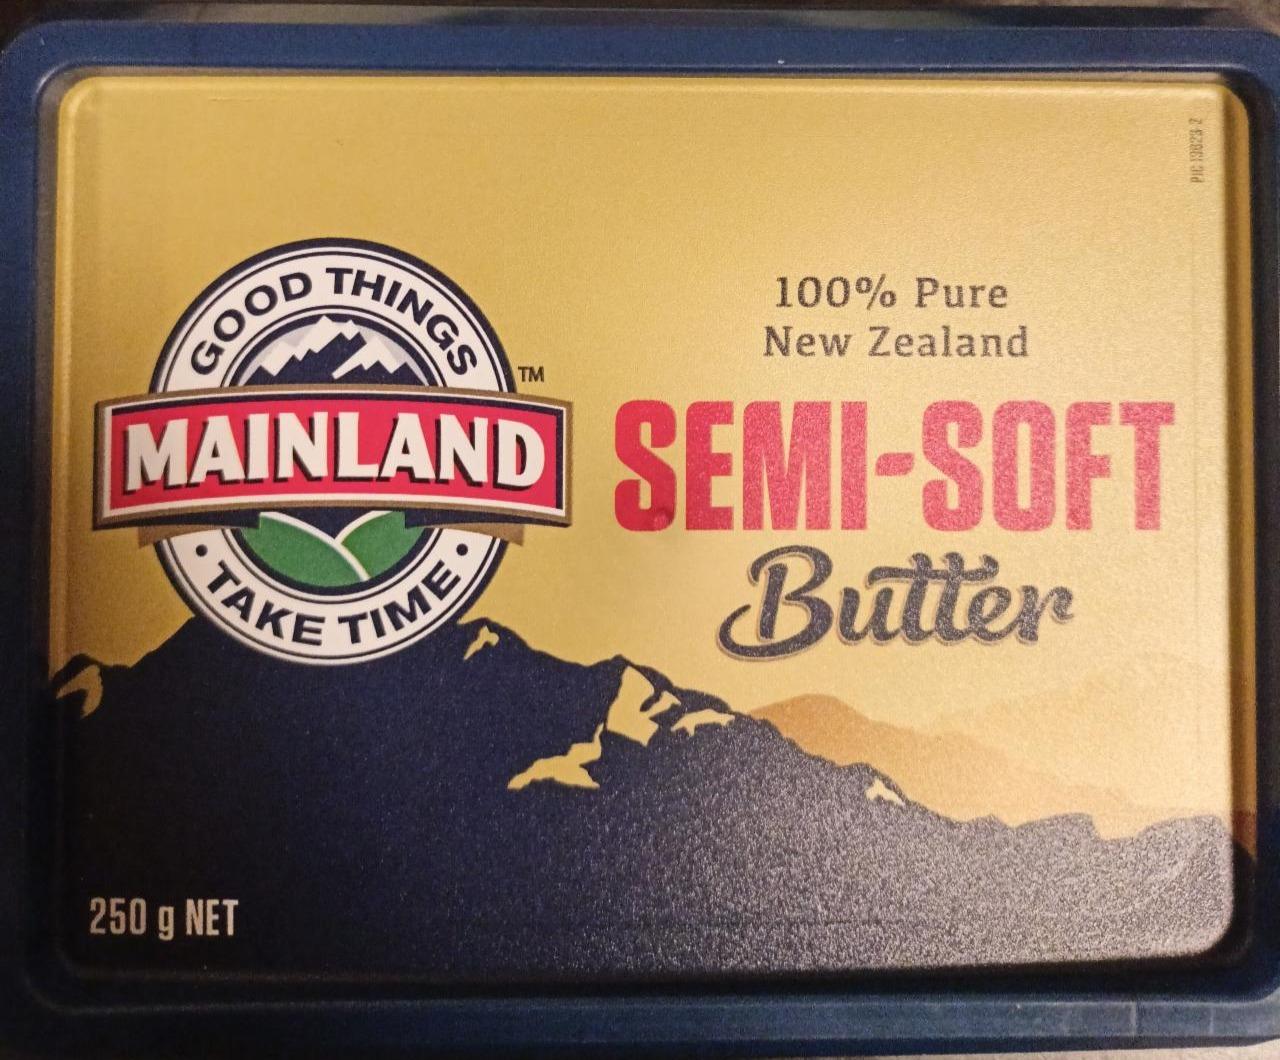 Fotografie - Semi-soft Butter Mainland